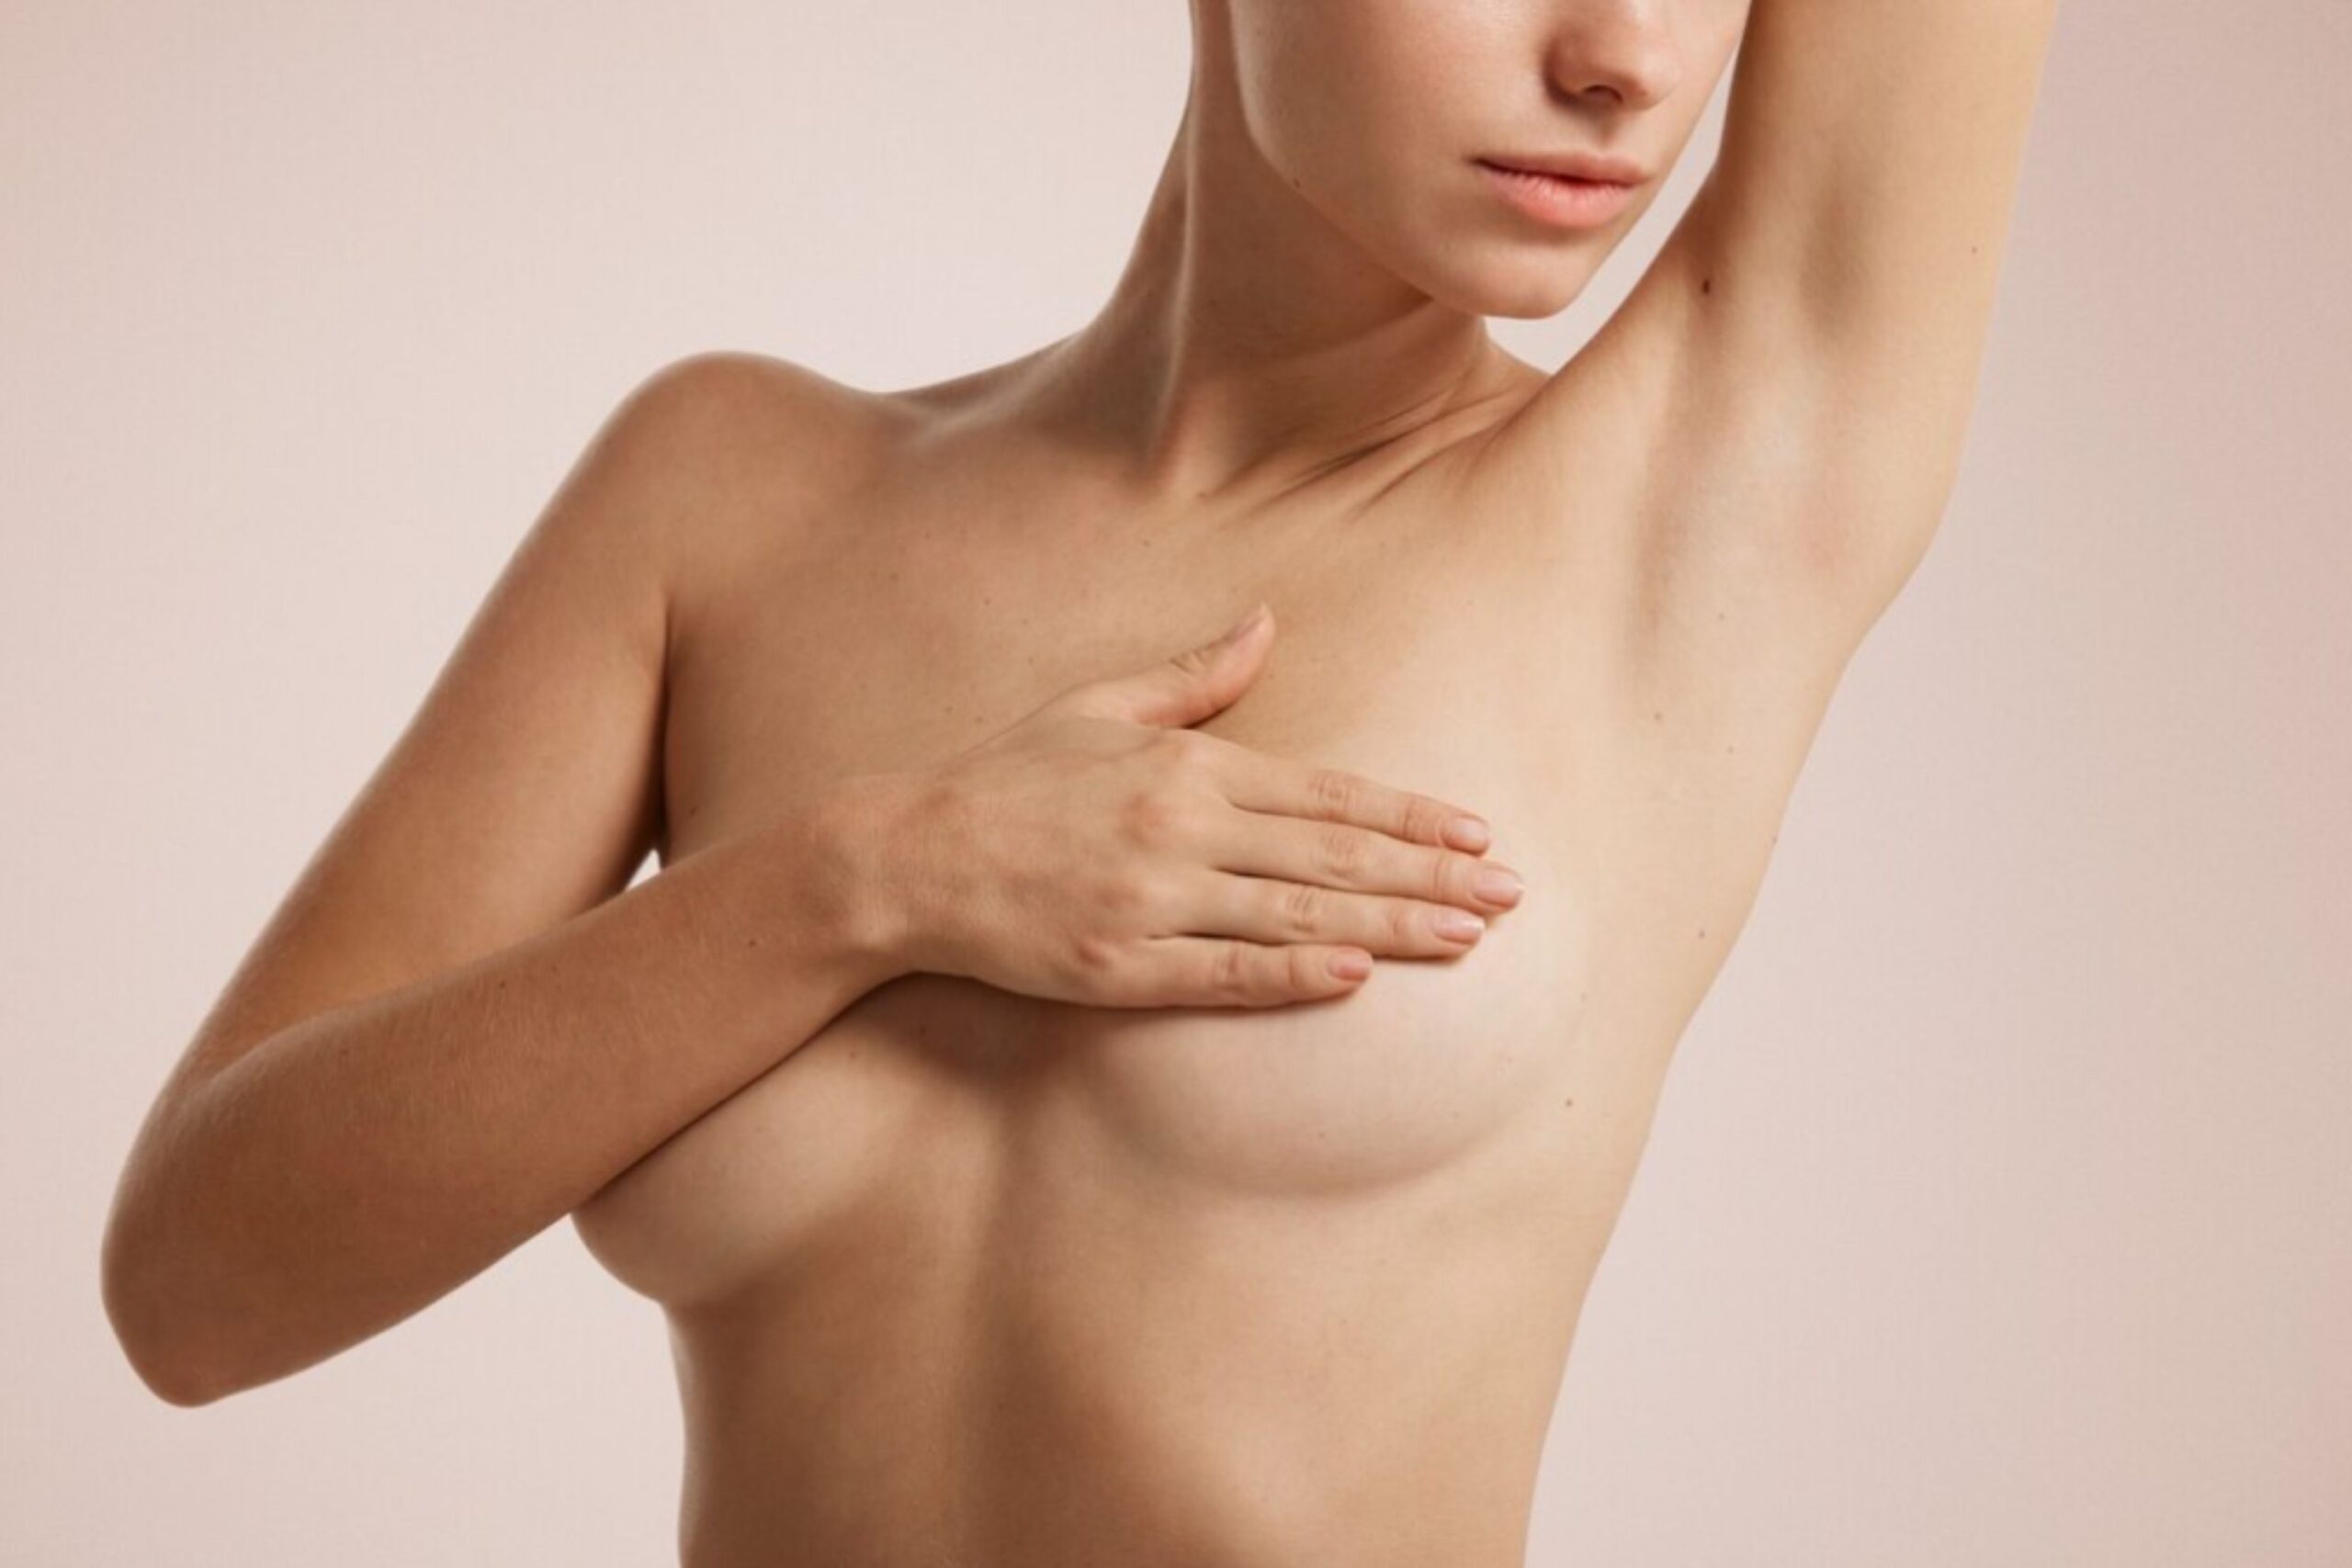 Οι κλινικές εξετάσεις του μαστού μπορούν να ανιχνεύσουν ένα εξόγκωμα στο μαστό σας και άλλες αλλαγές που μπορεί να απαιτούν περισσότερες εξετάσεις. Η εξέταση μαστού είναι μία από τις σημαντικότερες εξετάσεις για την έγκαιρη πρόληψη του καρκίνου του μαστού.